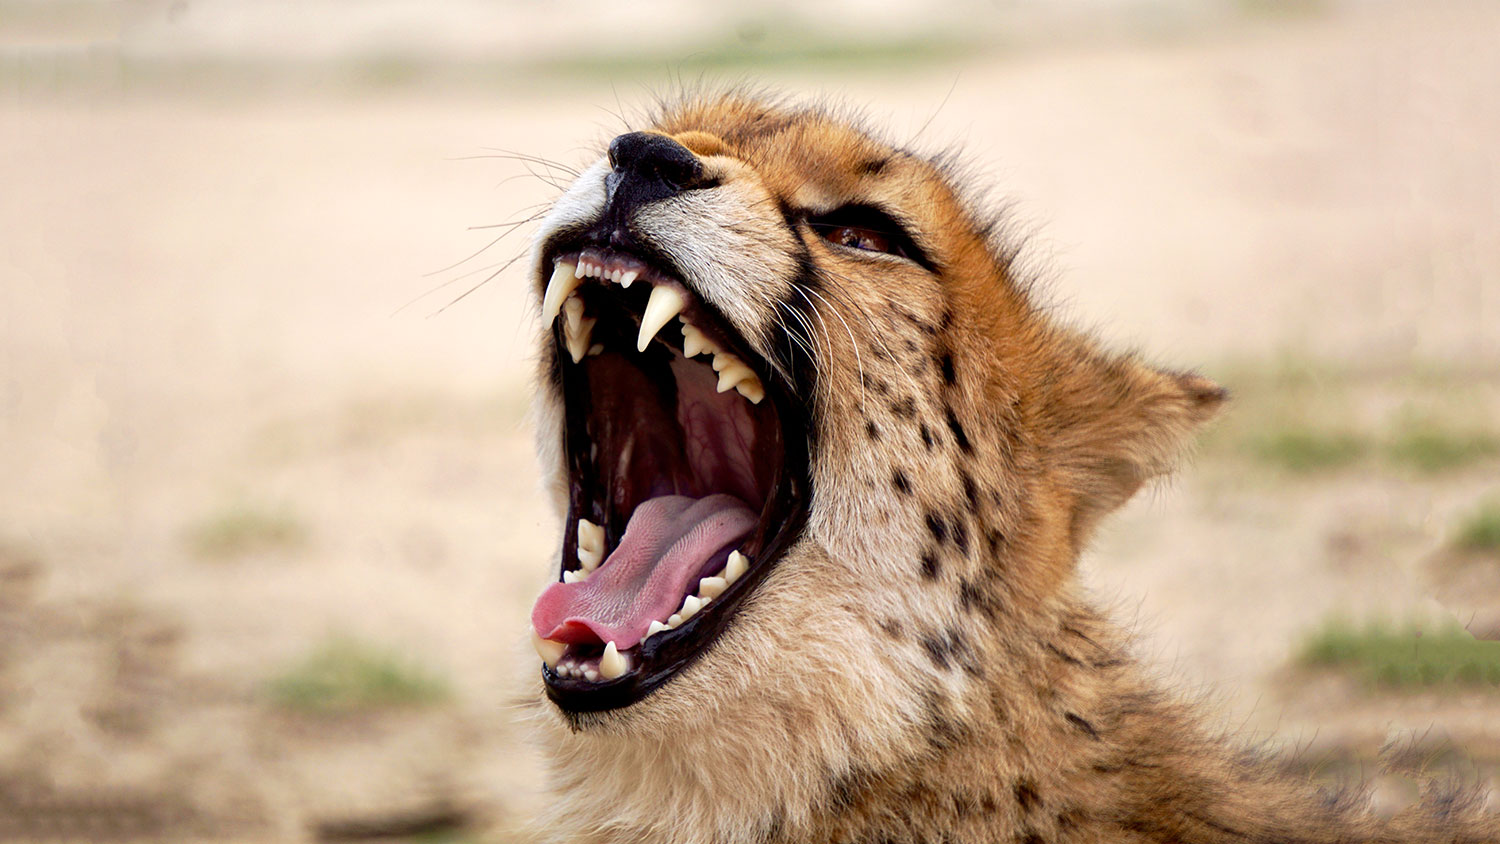 leopard roaring